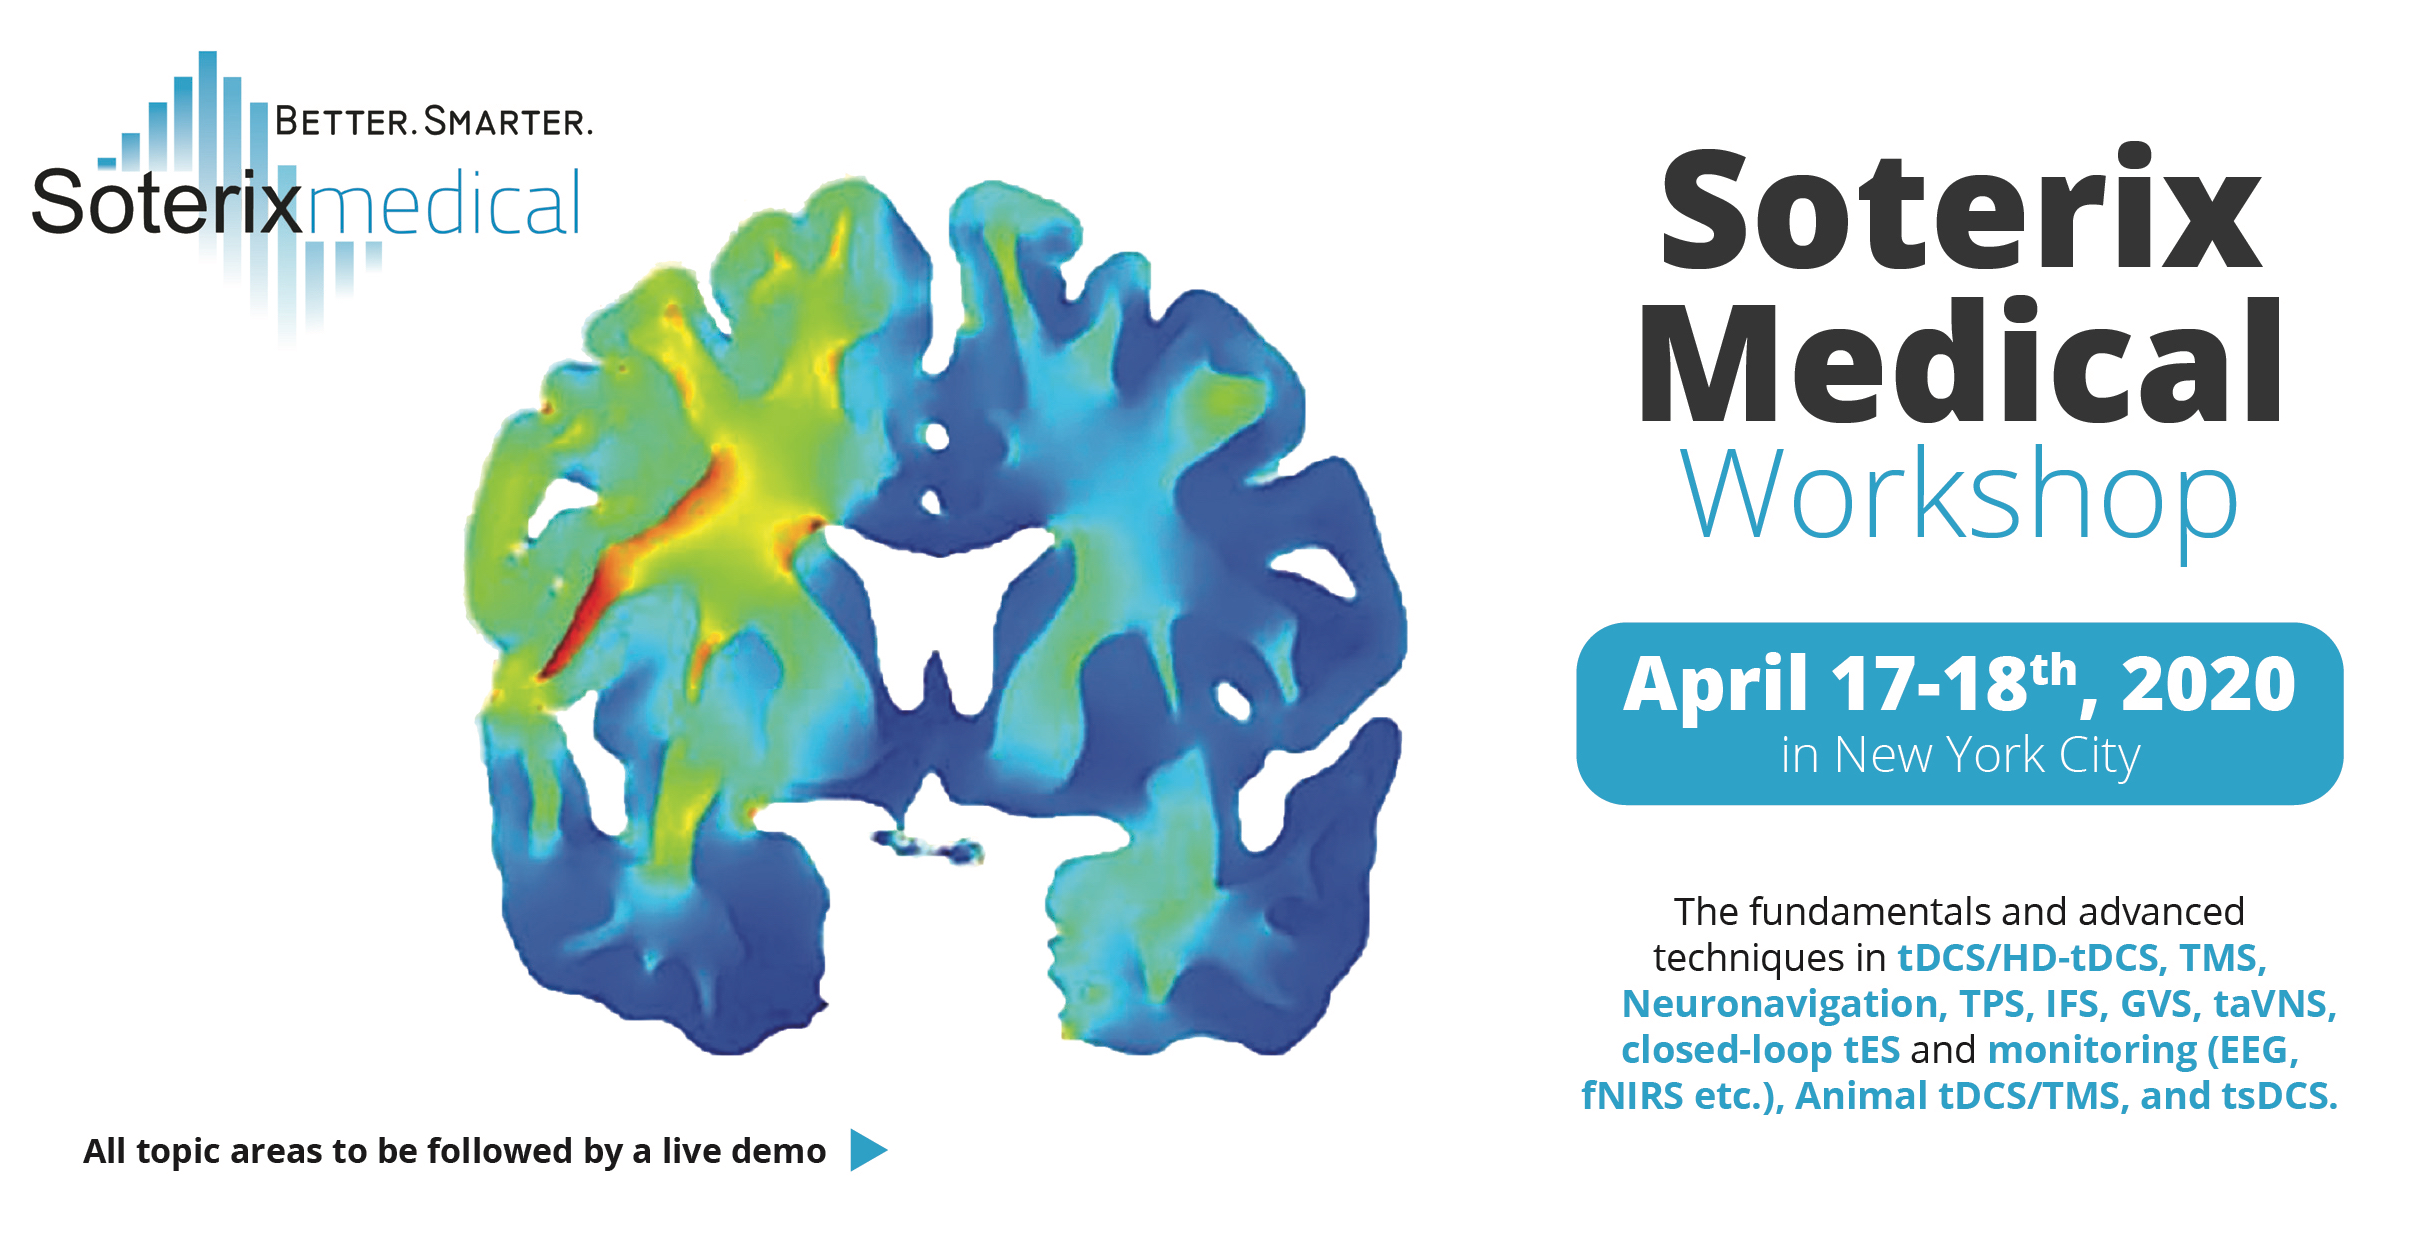 Soterix Medical workshop in New York - April 17-18, 2020